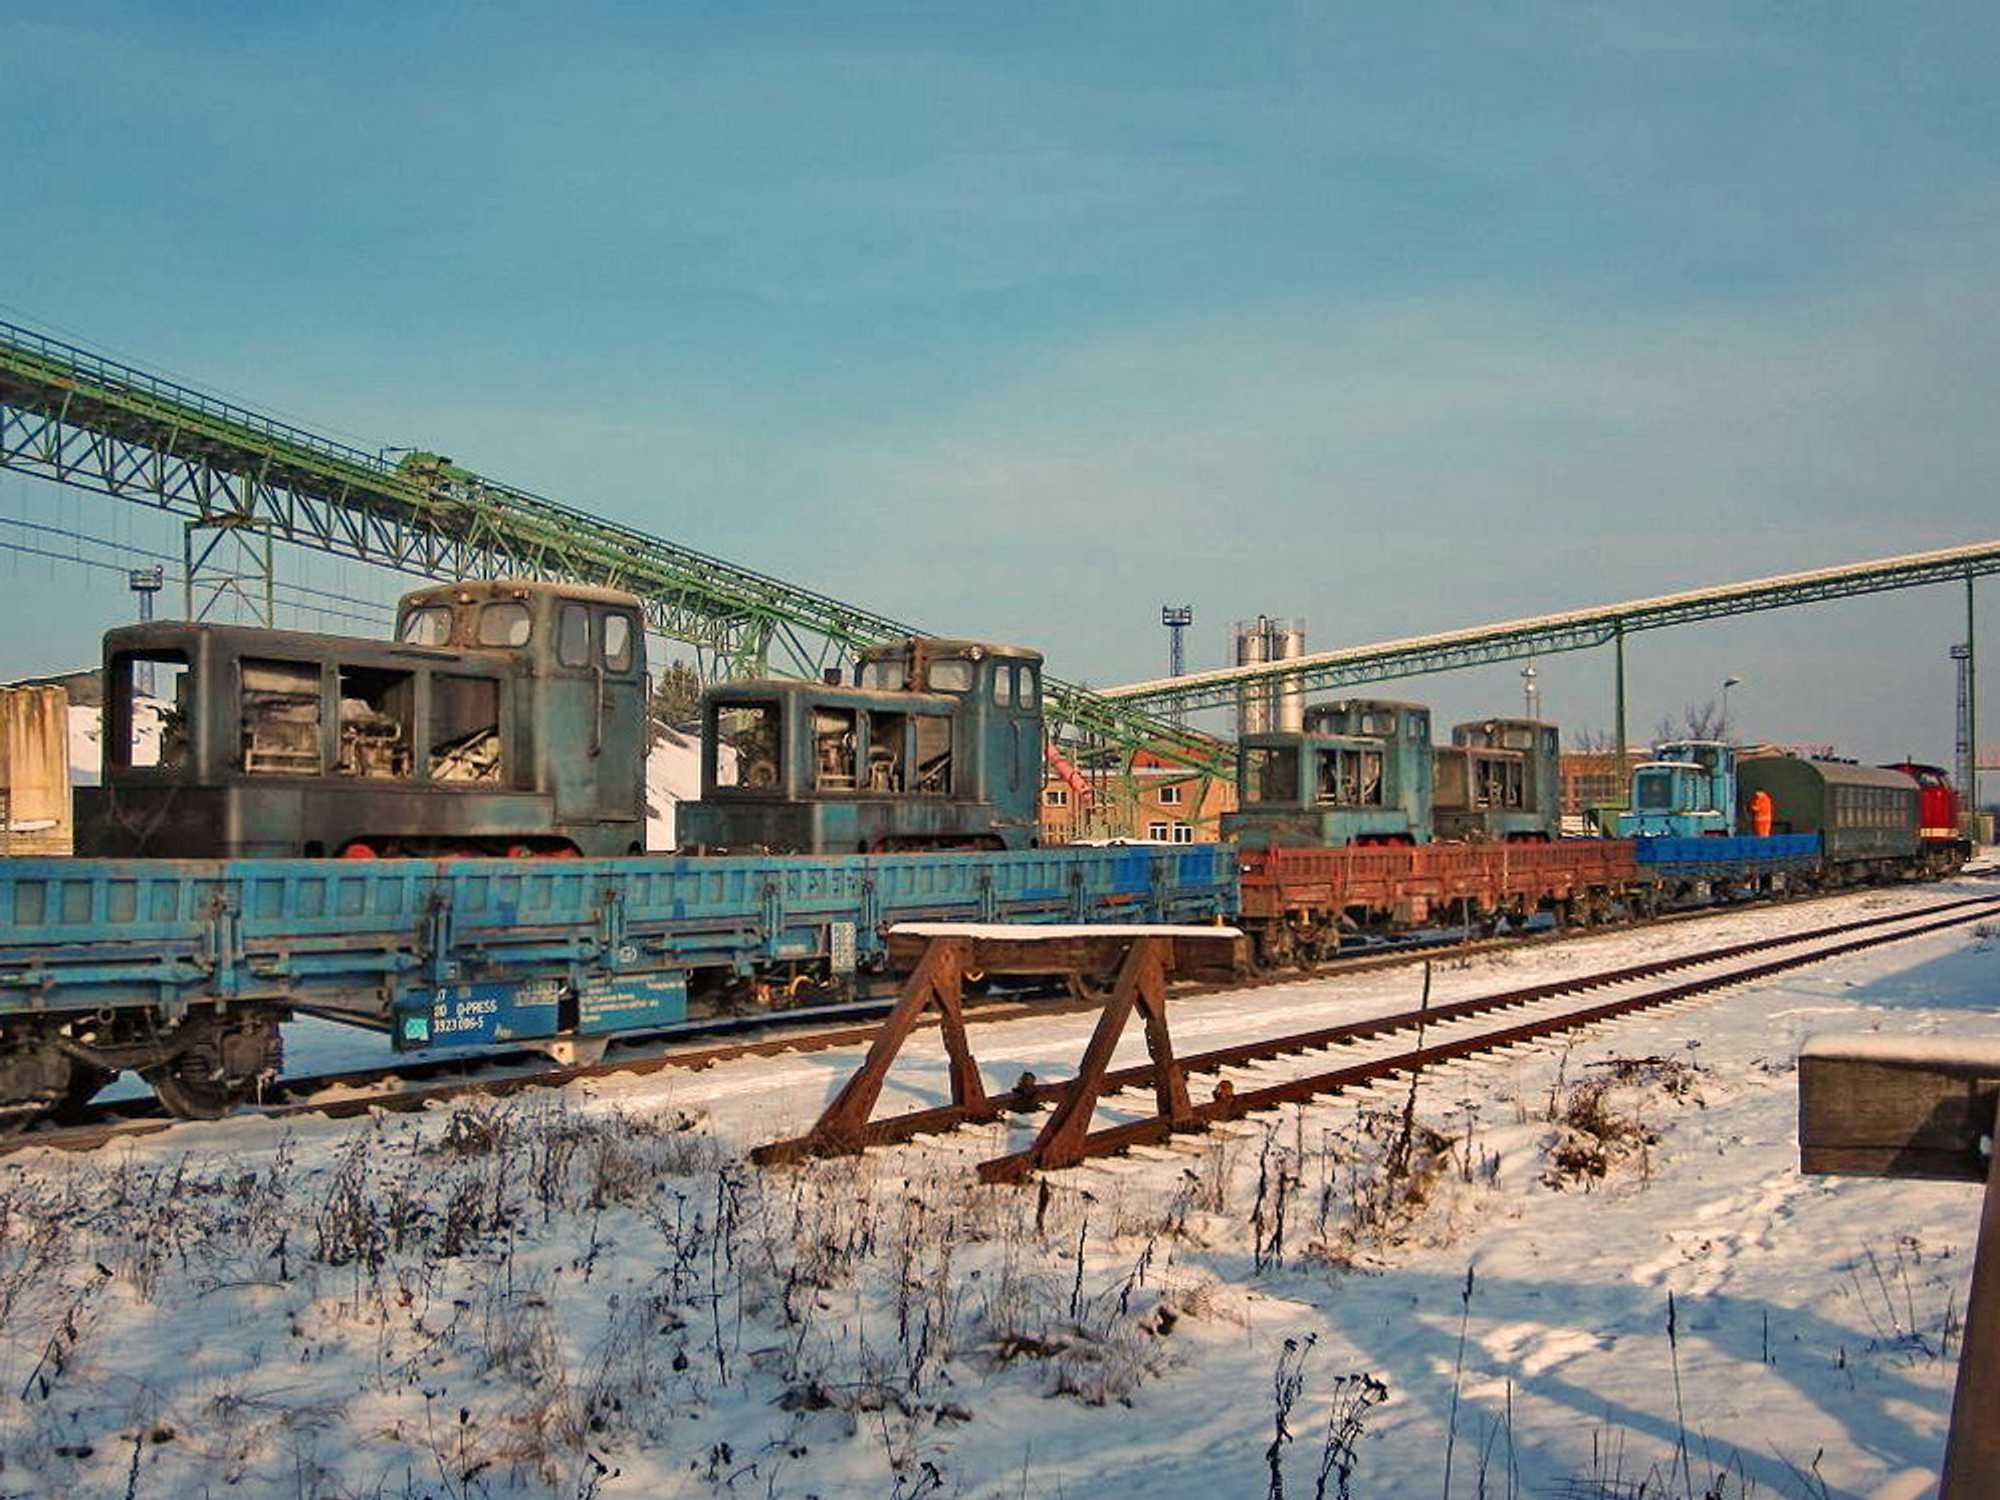 Am 15. Januar wurden fünf V10C Lokomotiven der früheren 600-mm-Kiesgrubenbahn des Betonwerkes in Möllenhagen aus ihrem „Dornröschenschlaf“ geweckt. Mehr Informationen dazu gibt es in dieser Ausgabe.